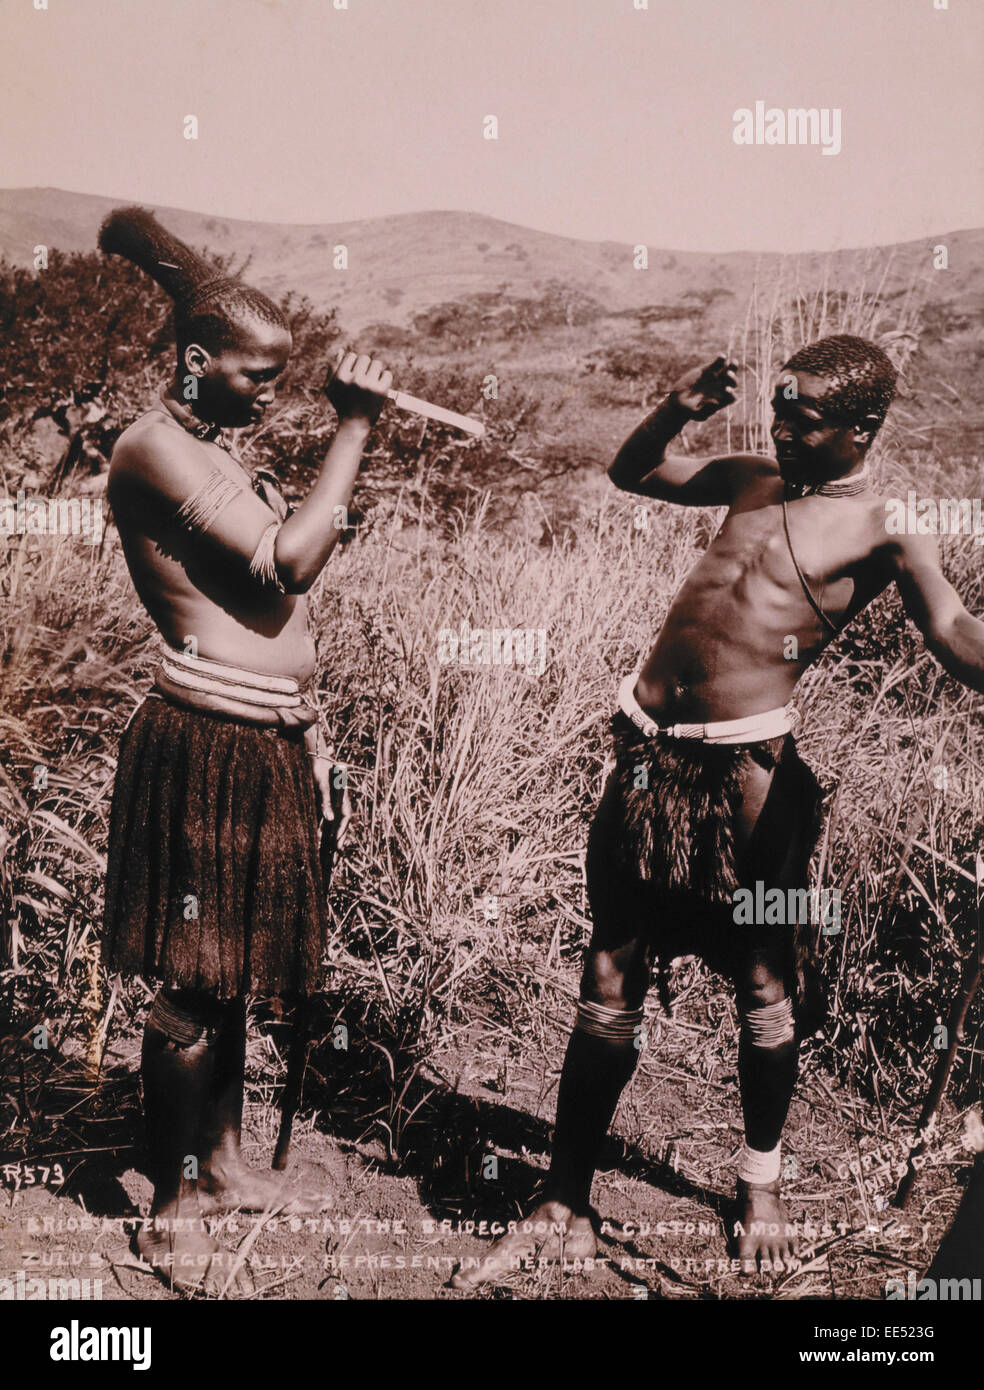 La tentative de coup de jeune fille zoulou époux, un acte symbolisant son dernier acte de liberté, de l'Afrique, vers 1890 Banque D'Images